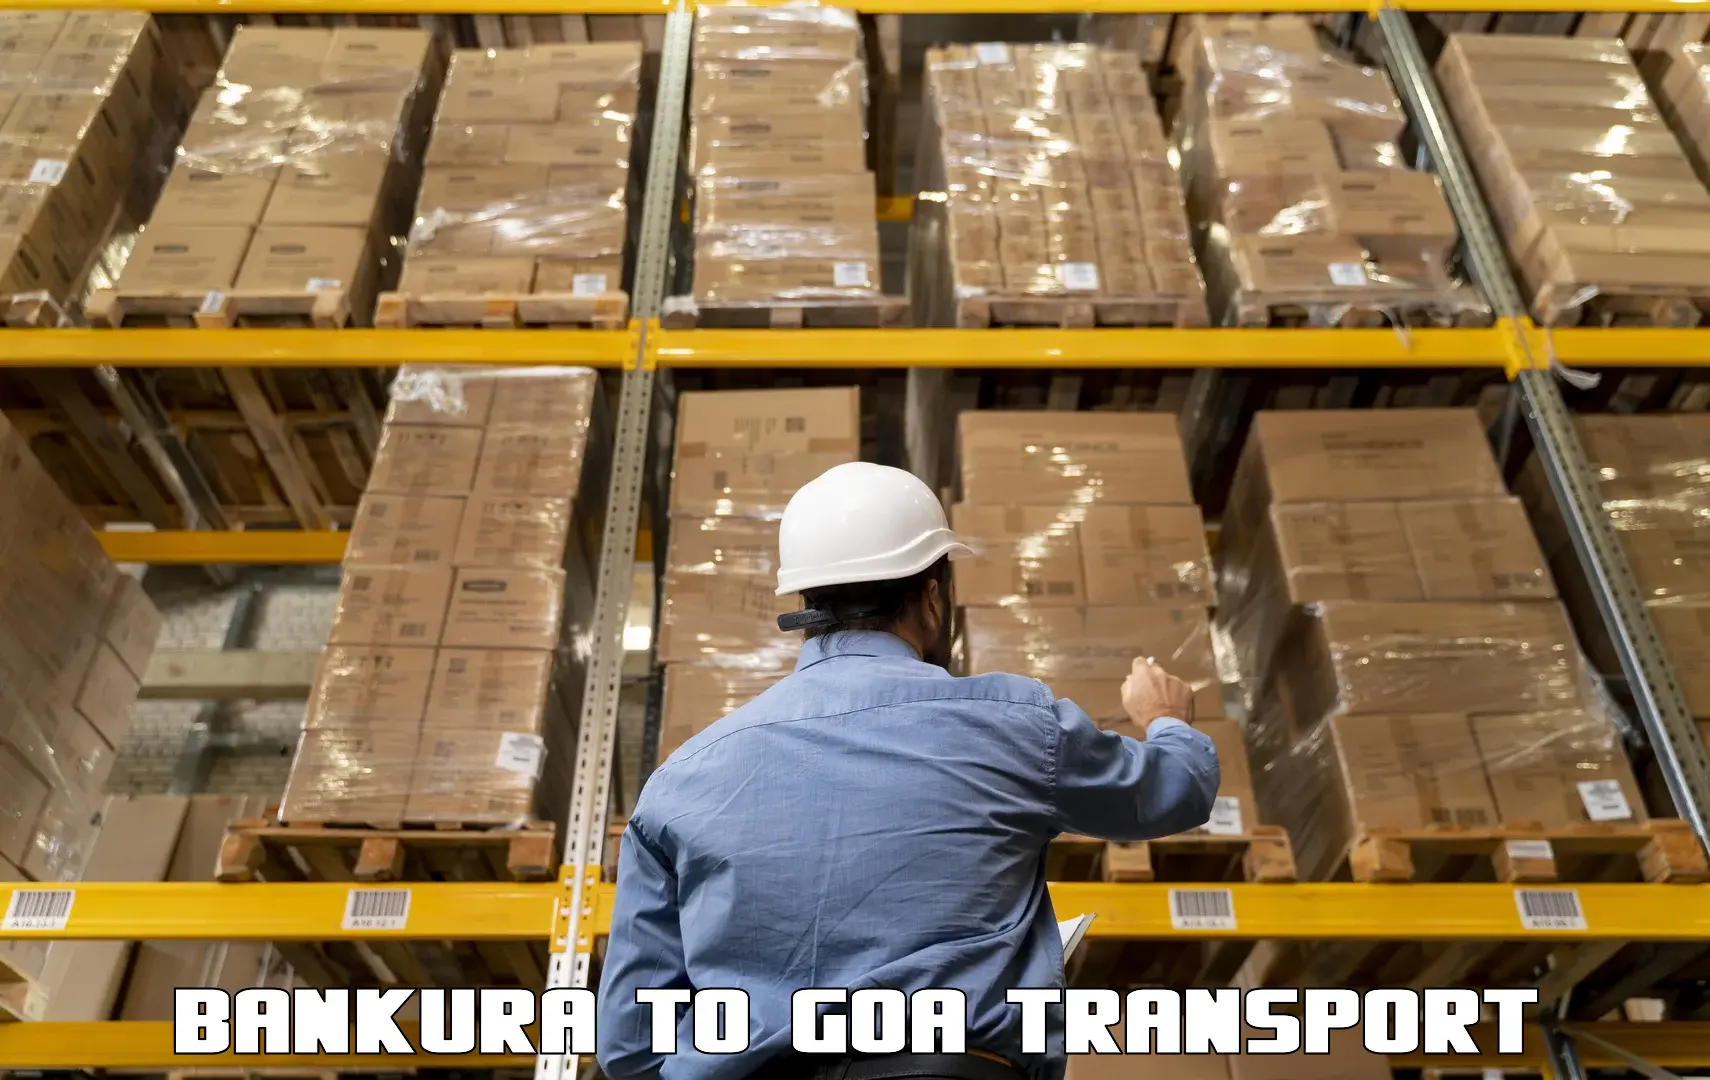 Commercial transport service Bankura to Mormugao Port